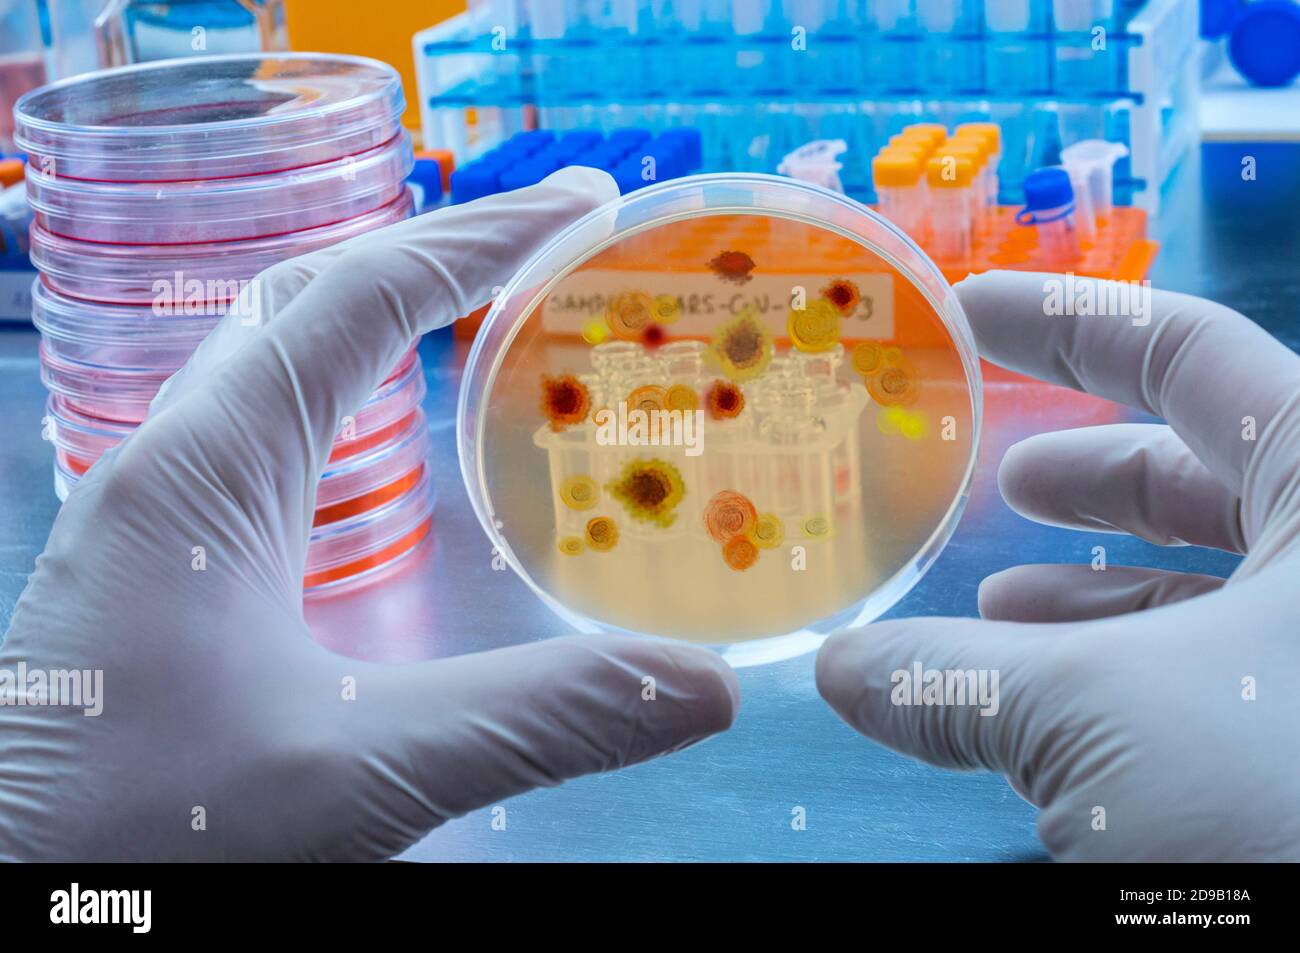 Un scientifique examine le virus du paludisme sur une boîte de Petri dans une image conceptuelle de laboratoire Banque D'Images